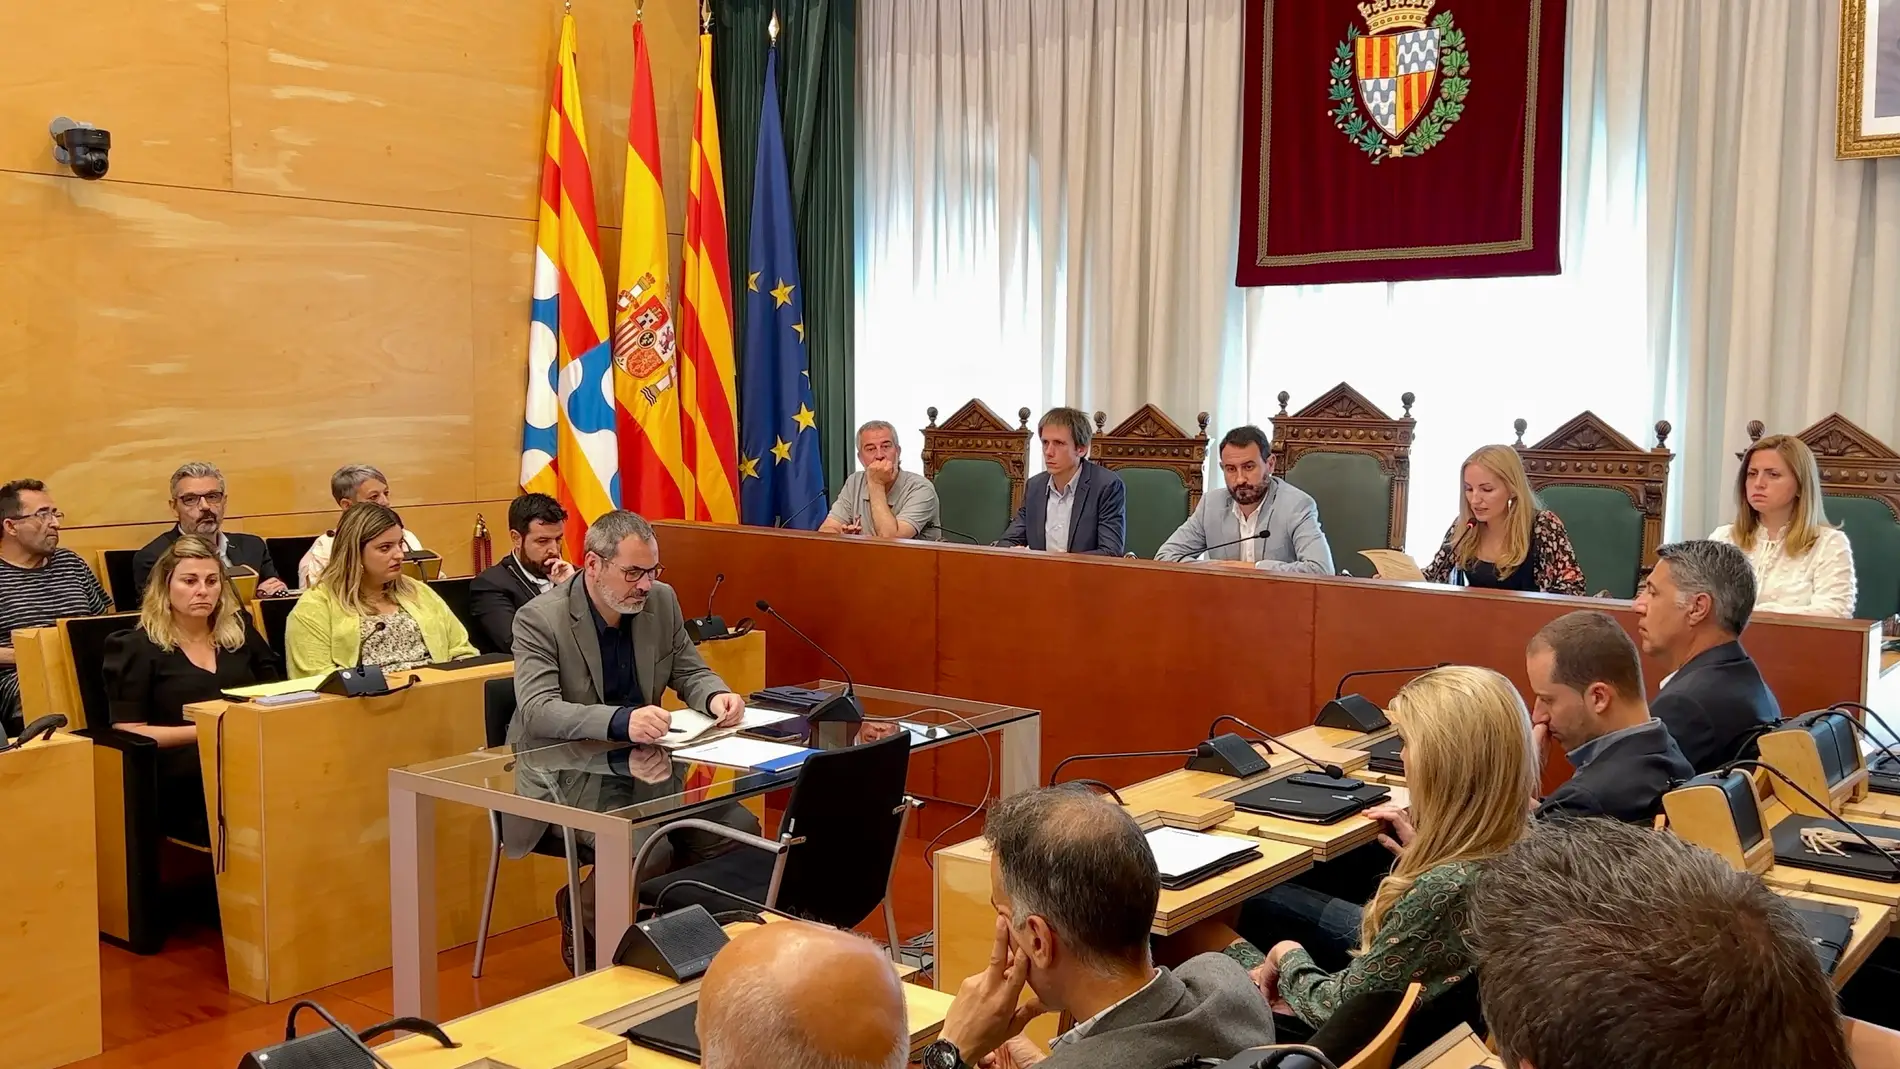 L'Ajuntament de Badalona ha condemnat l'última violació múltiple en el ple extraordinari convocat aquest matí